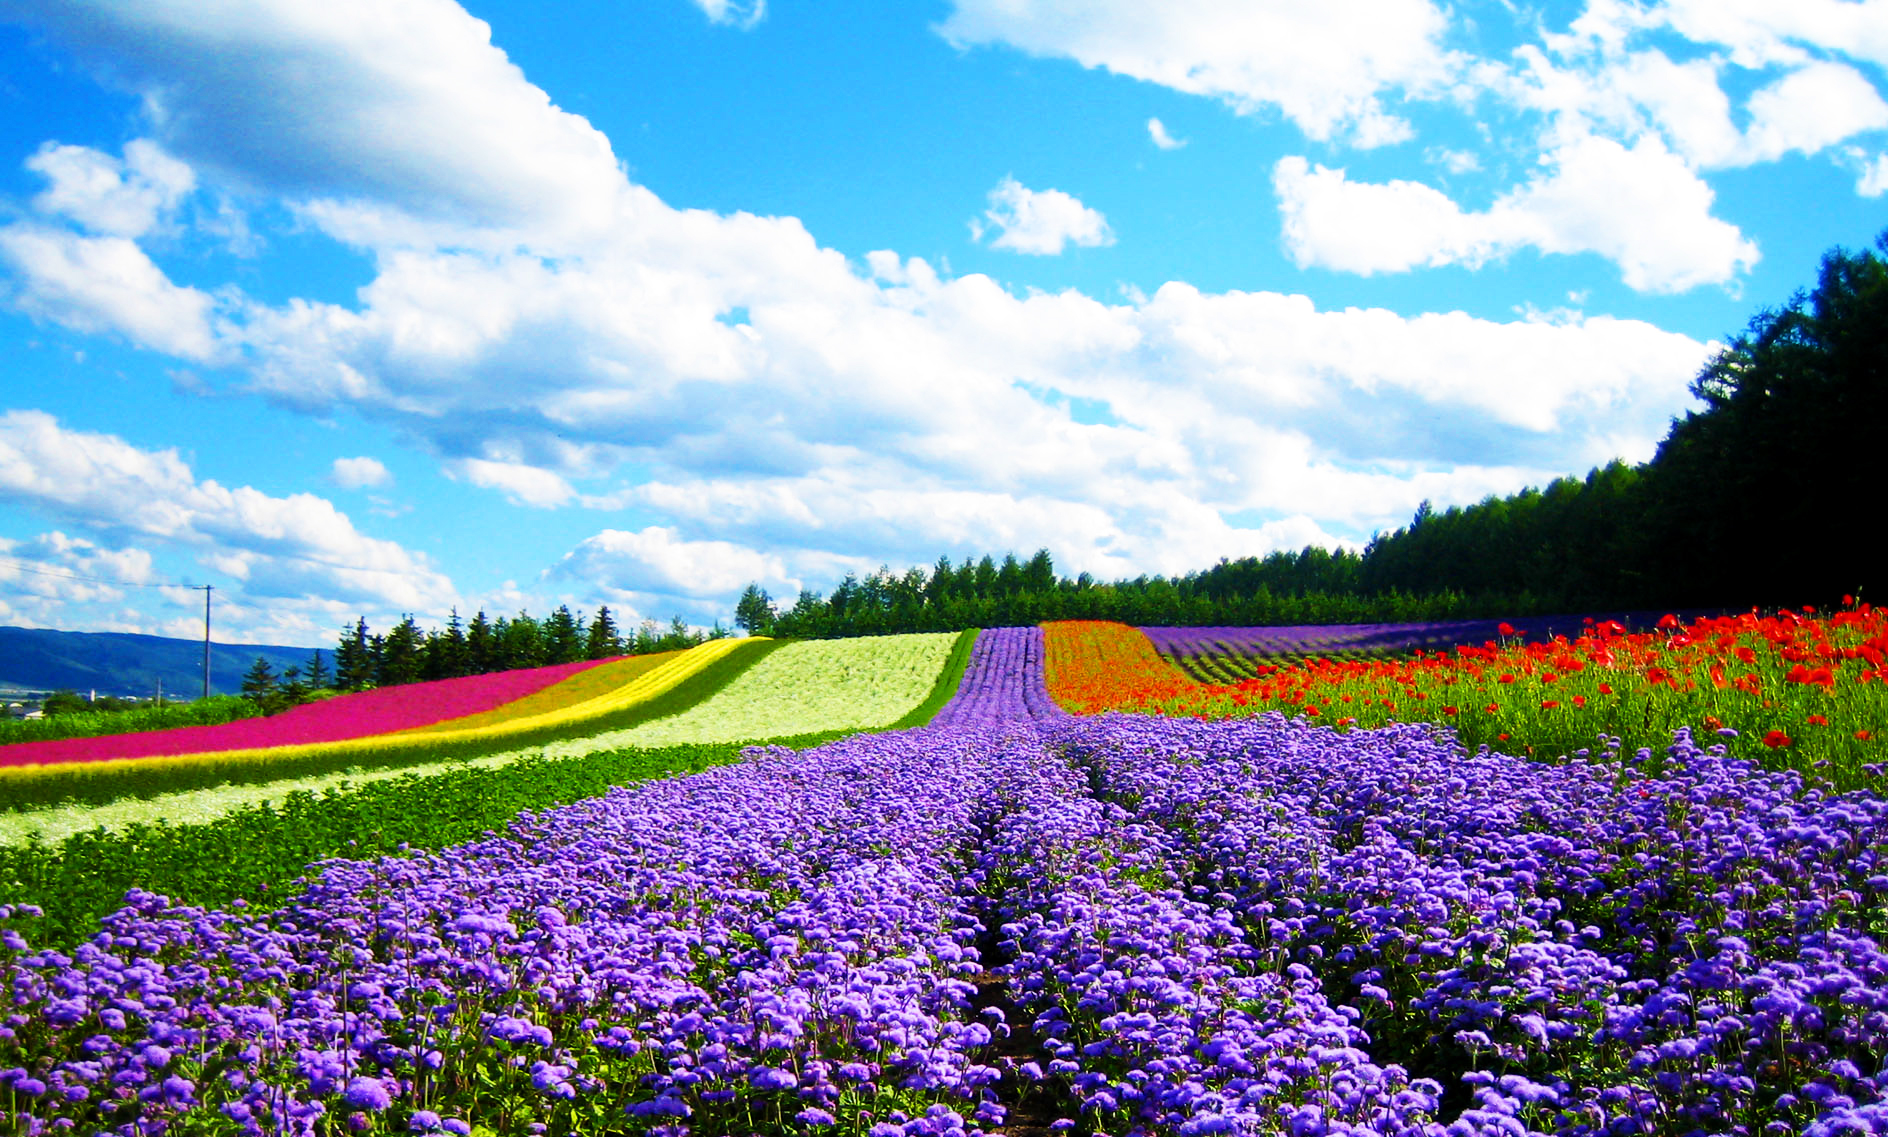 Tour du lịch Nhật Bản tháng 7 mùa hoa Lavender 6N5Đ